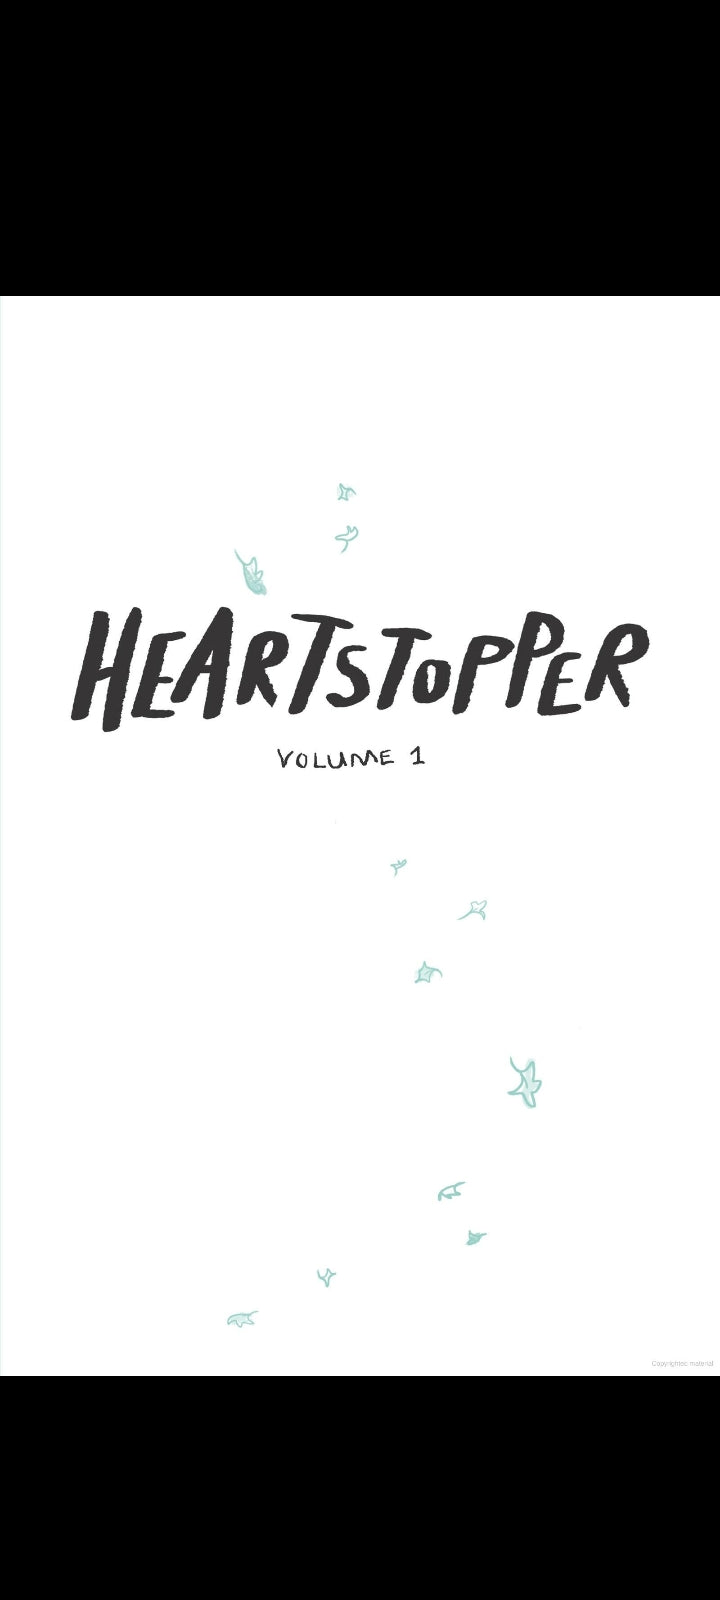 Heartstopper Vol. 1